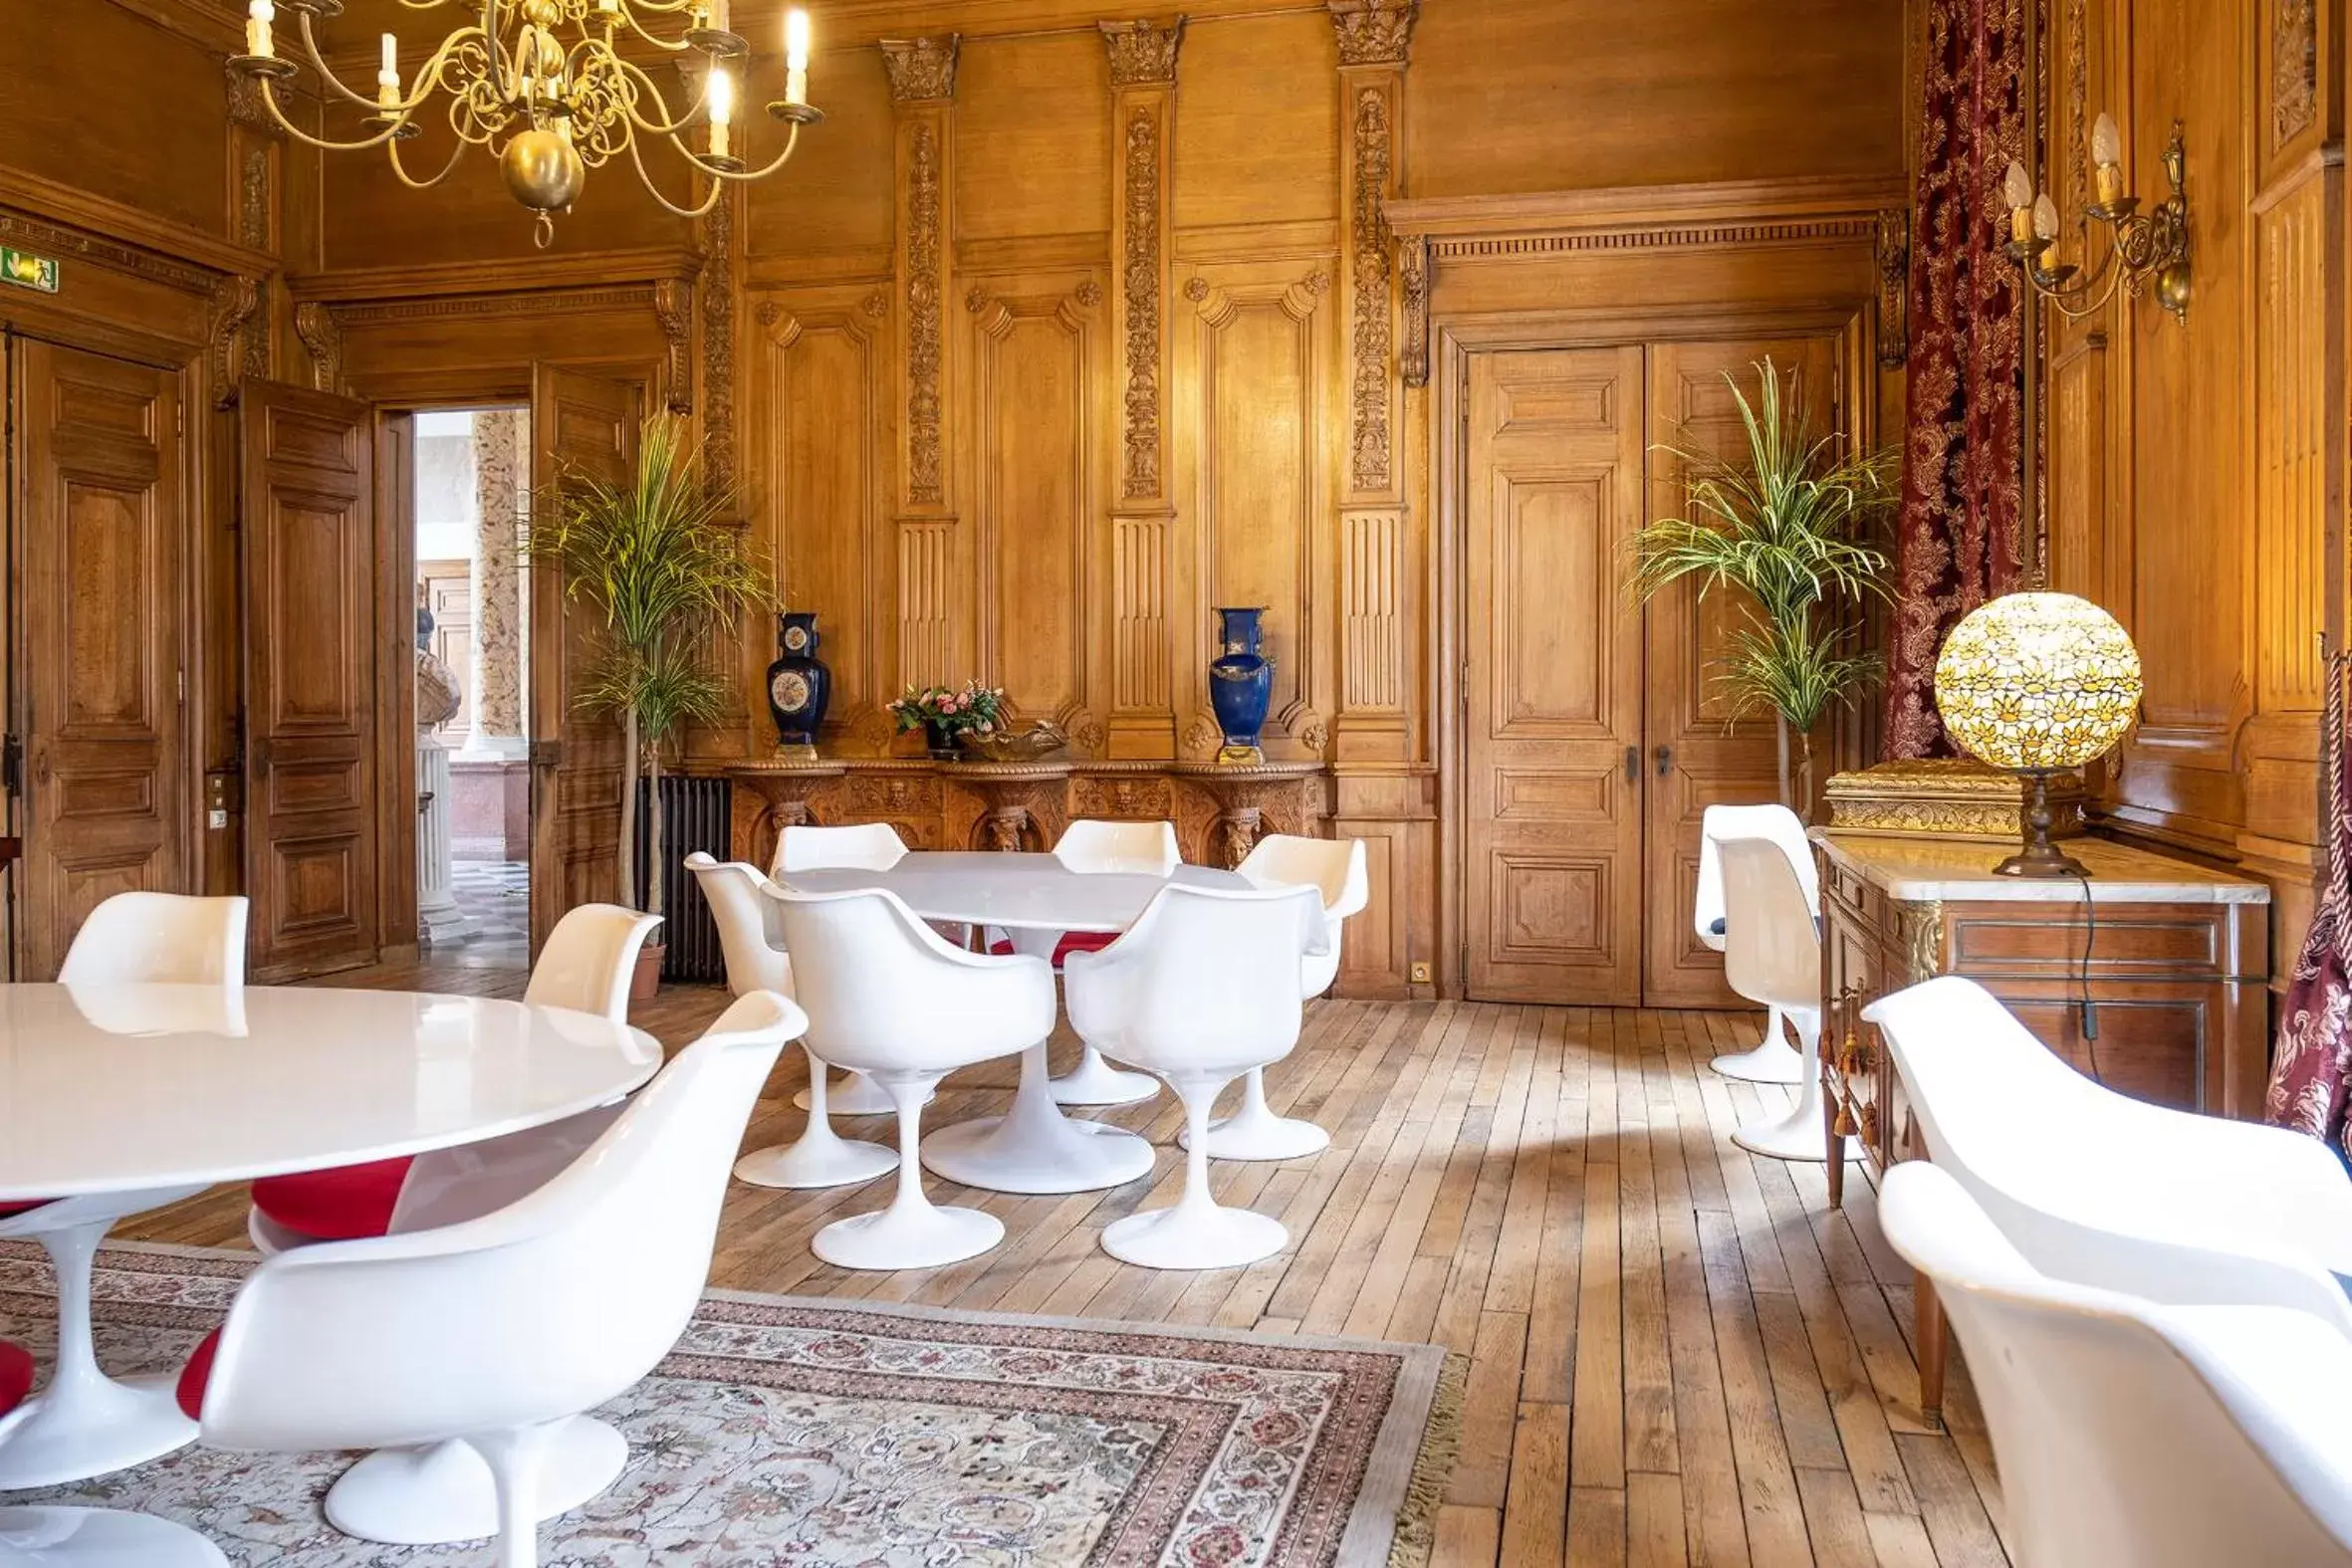 Banquet/Function facilities, Lounge/Bar in Château de Tressé